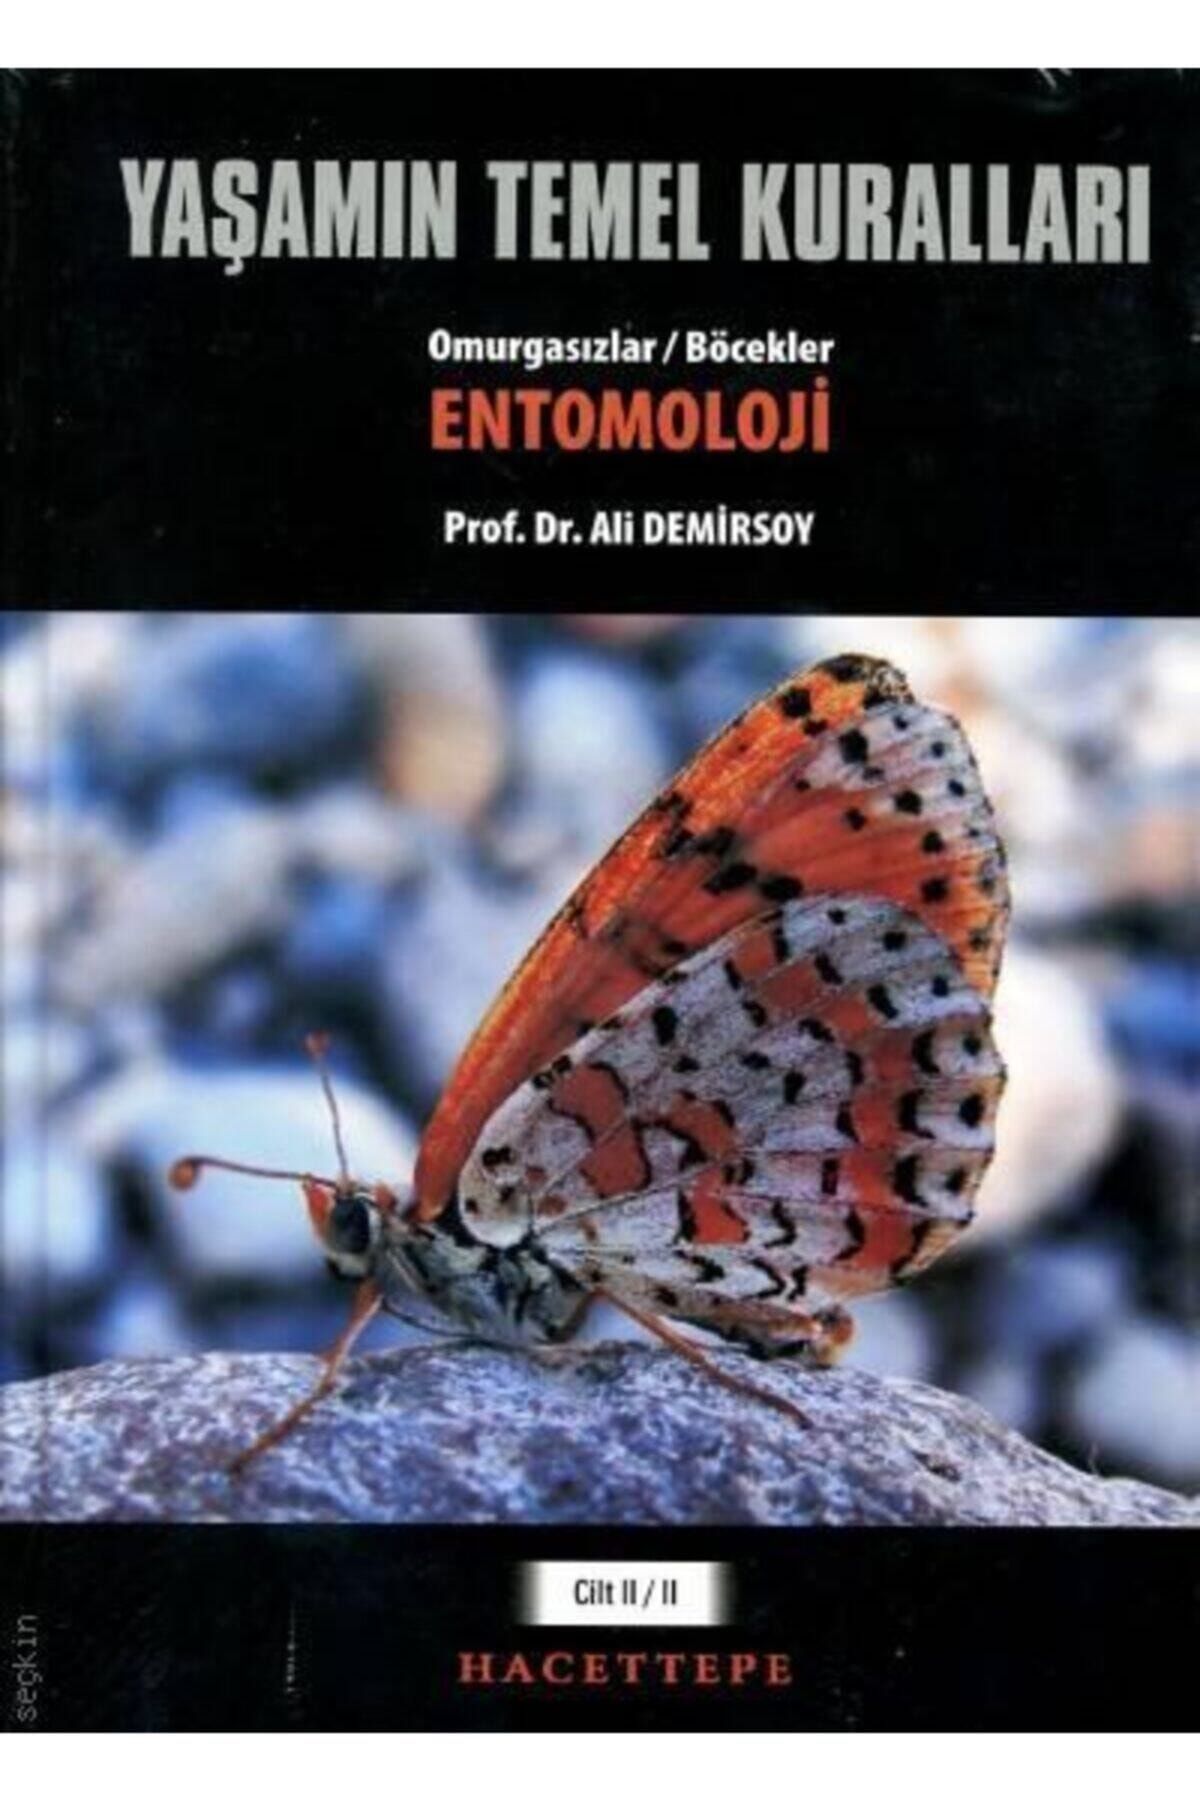 Hacettepe Taş Yaşamın Temel Kuralları, Cilt:ıı / Kısım:ıı – Omurgasızlar / Böcekler: Entomoloji - Ali Demirsoy